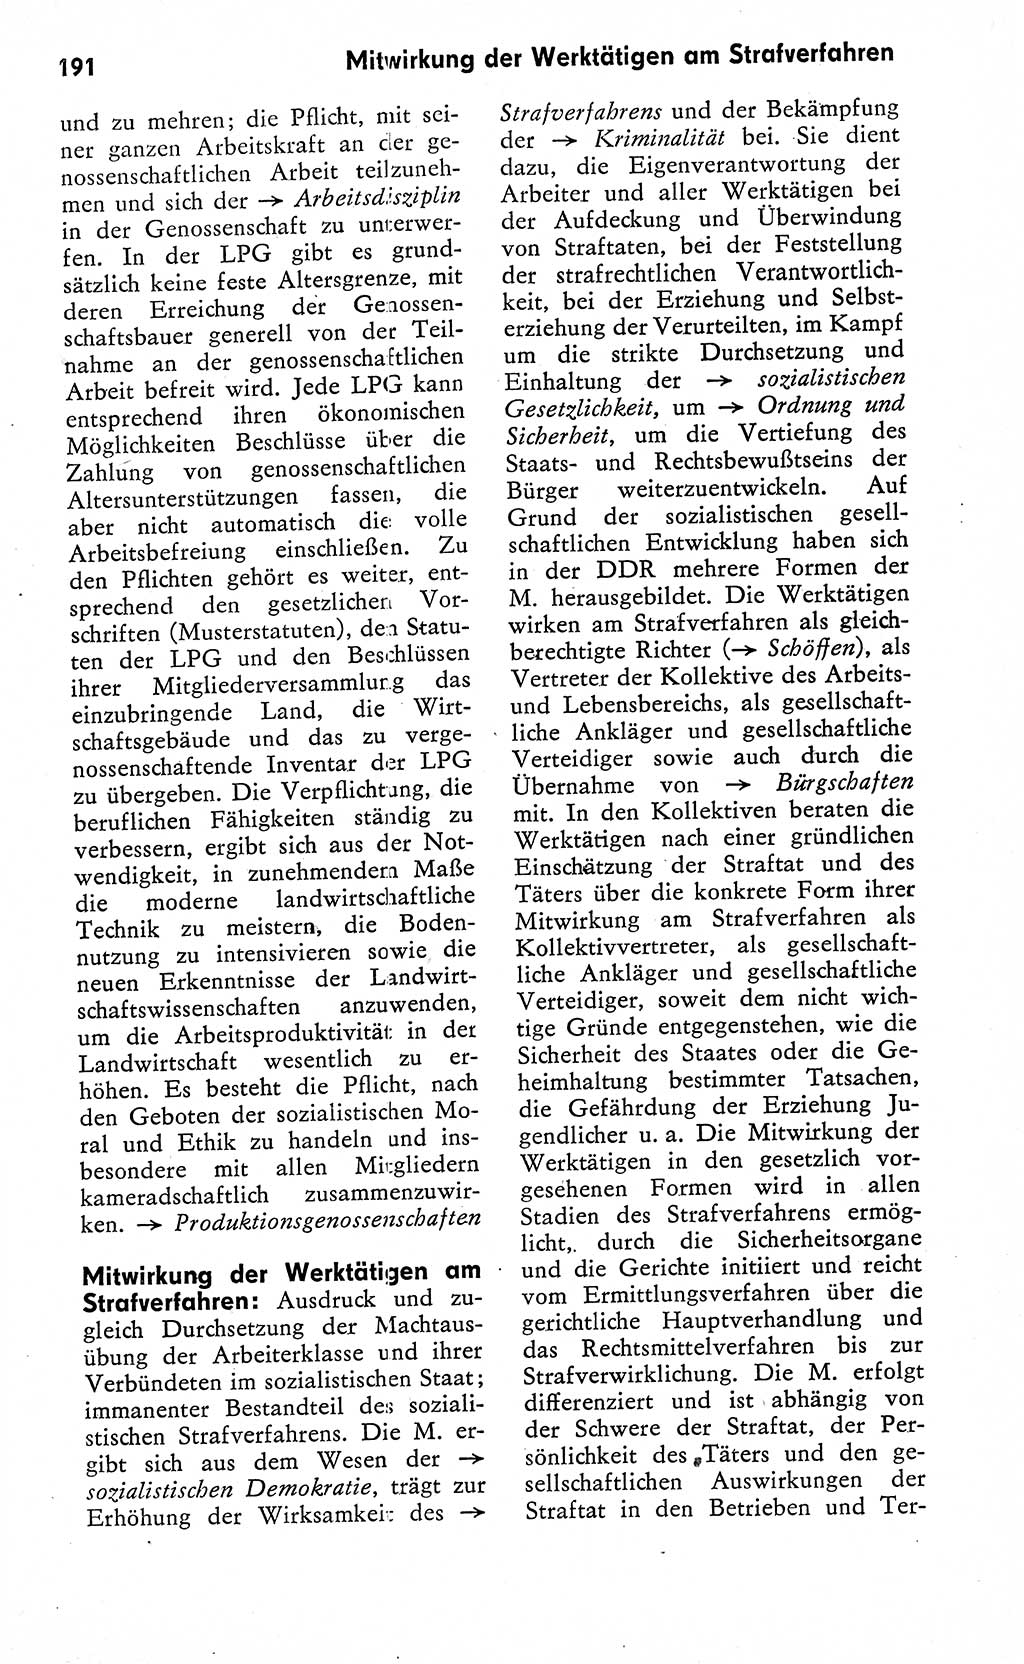 Wörterbuch zum sozialistischen Staat [Deutsche Demokratische Republik (DDR)] 1974, Seite 191 (Wb. soz. St. DDR 1974, S. 191)